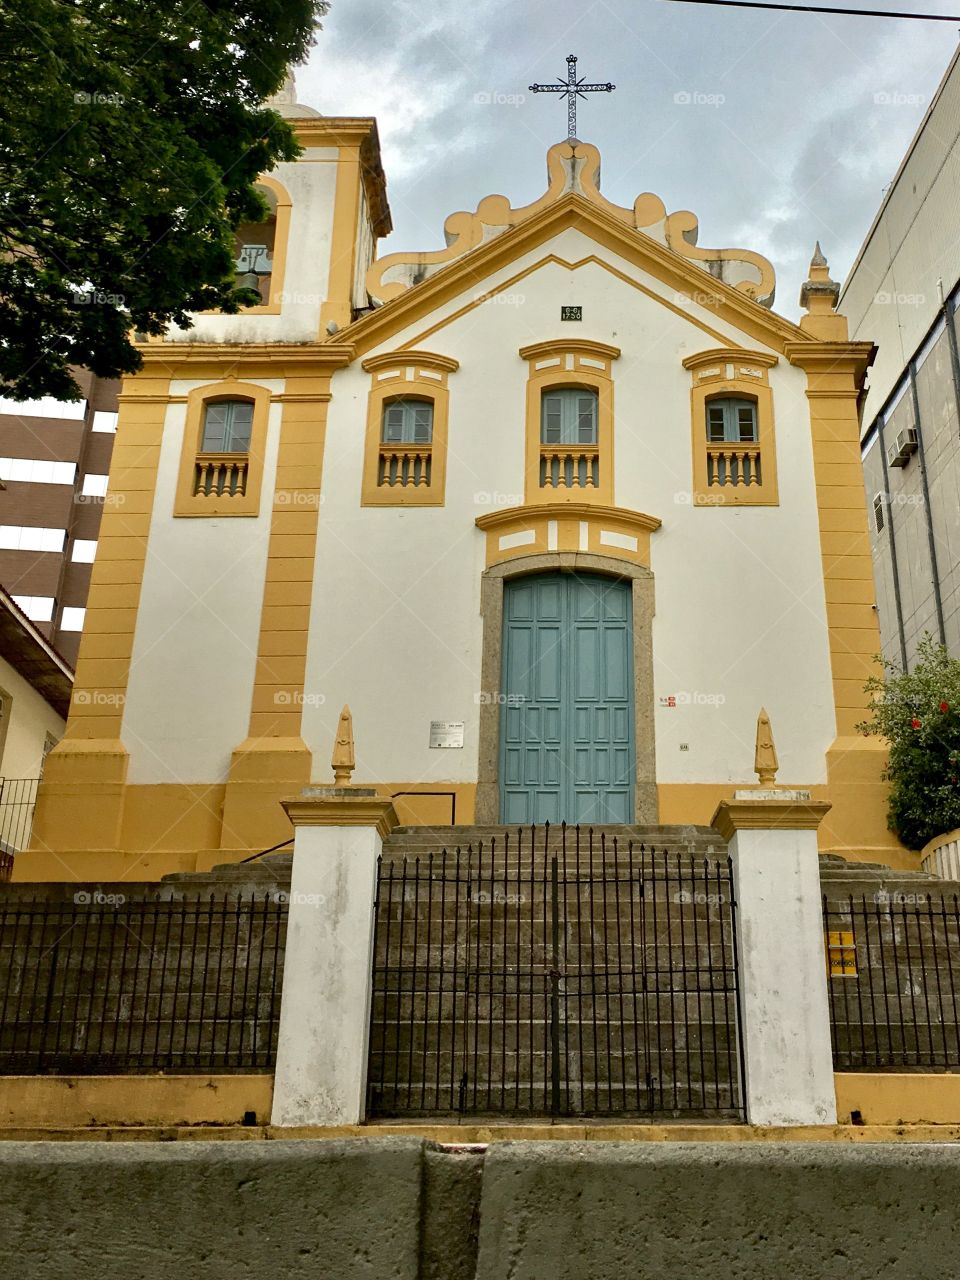 Igreja do Rosário Church.